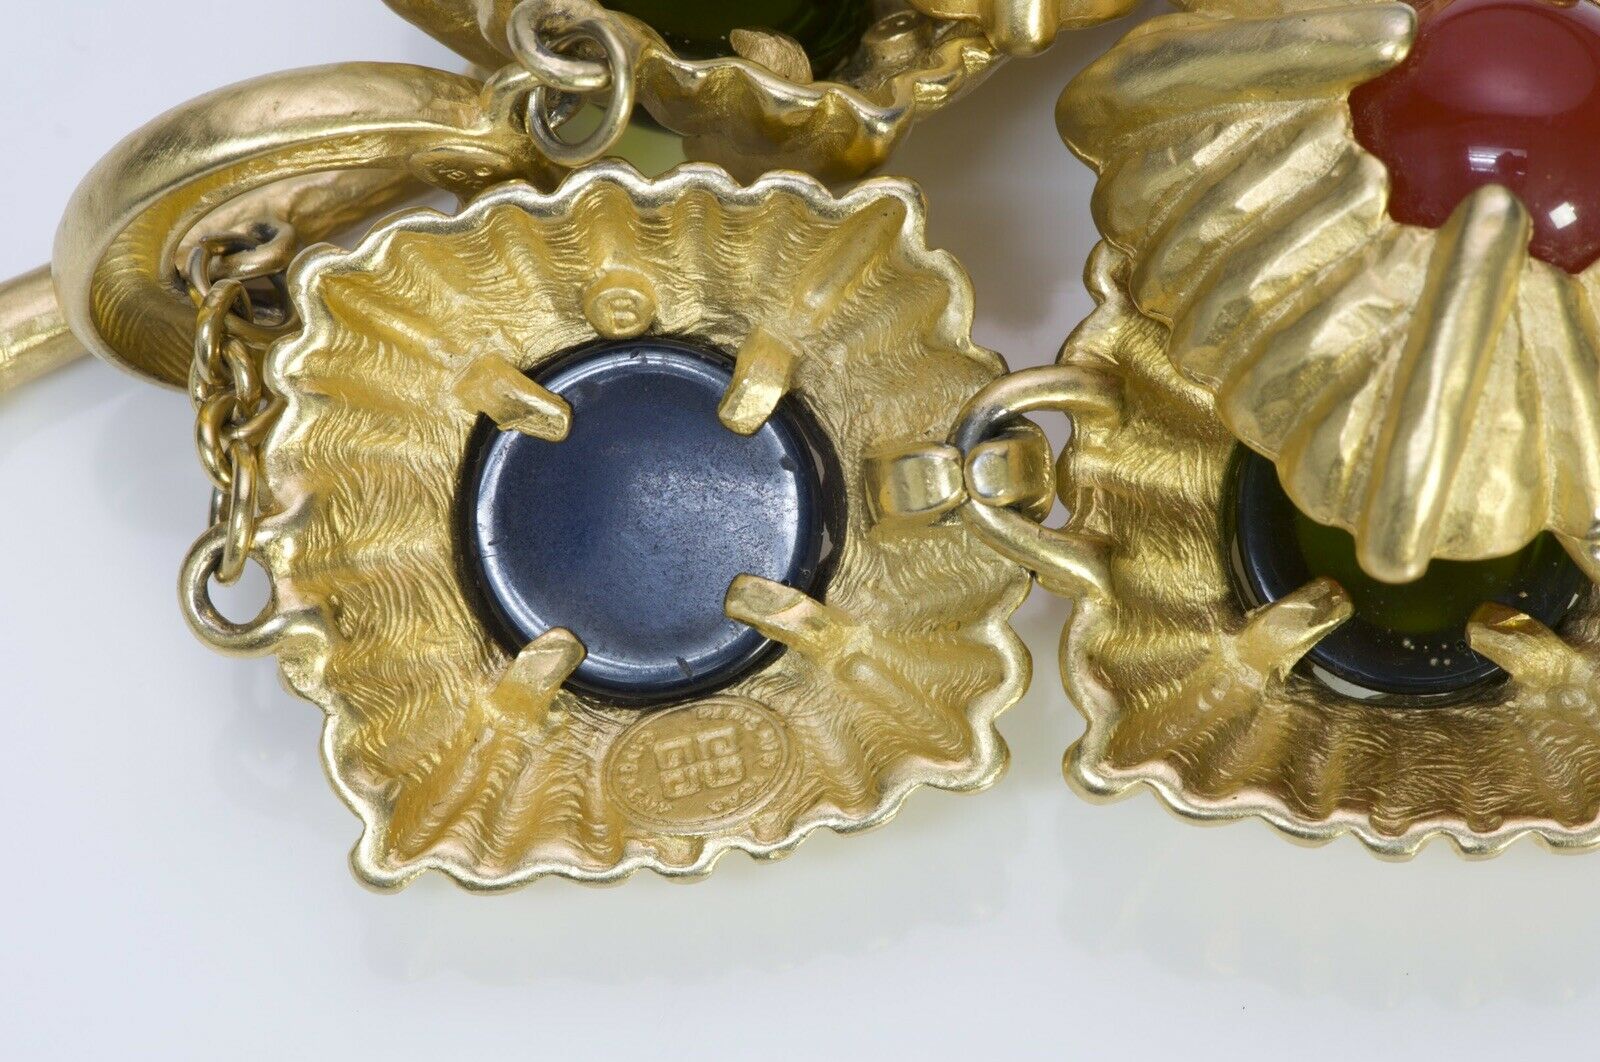 GIVENCHY Paris Multi Color Cabochon Glass Bracelet